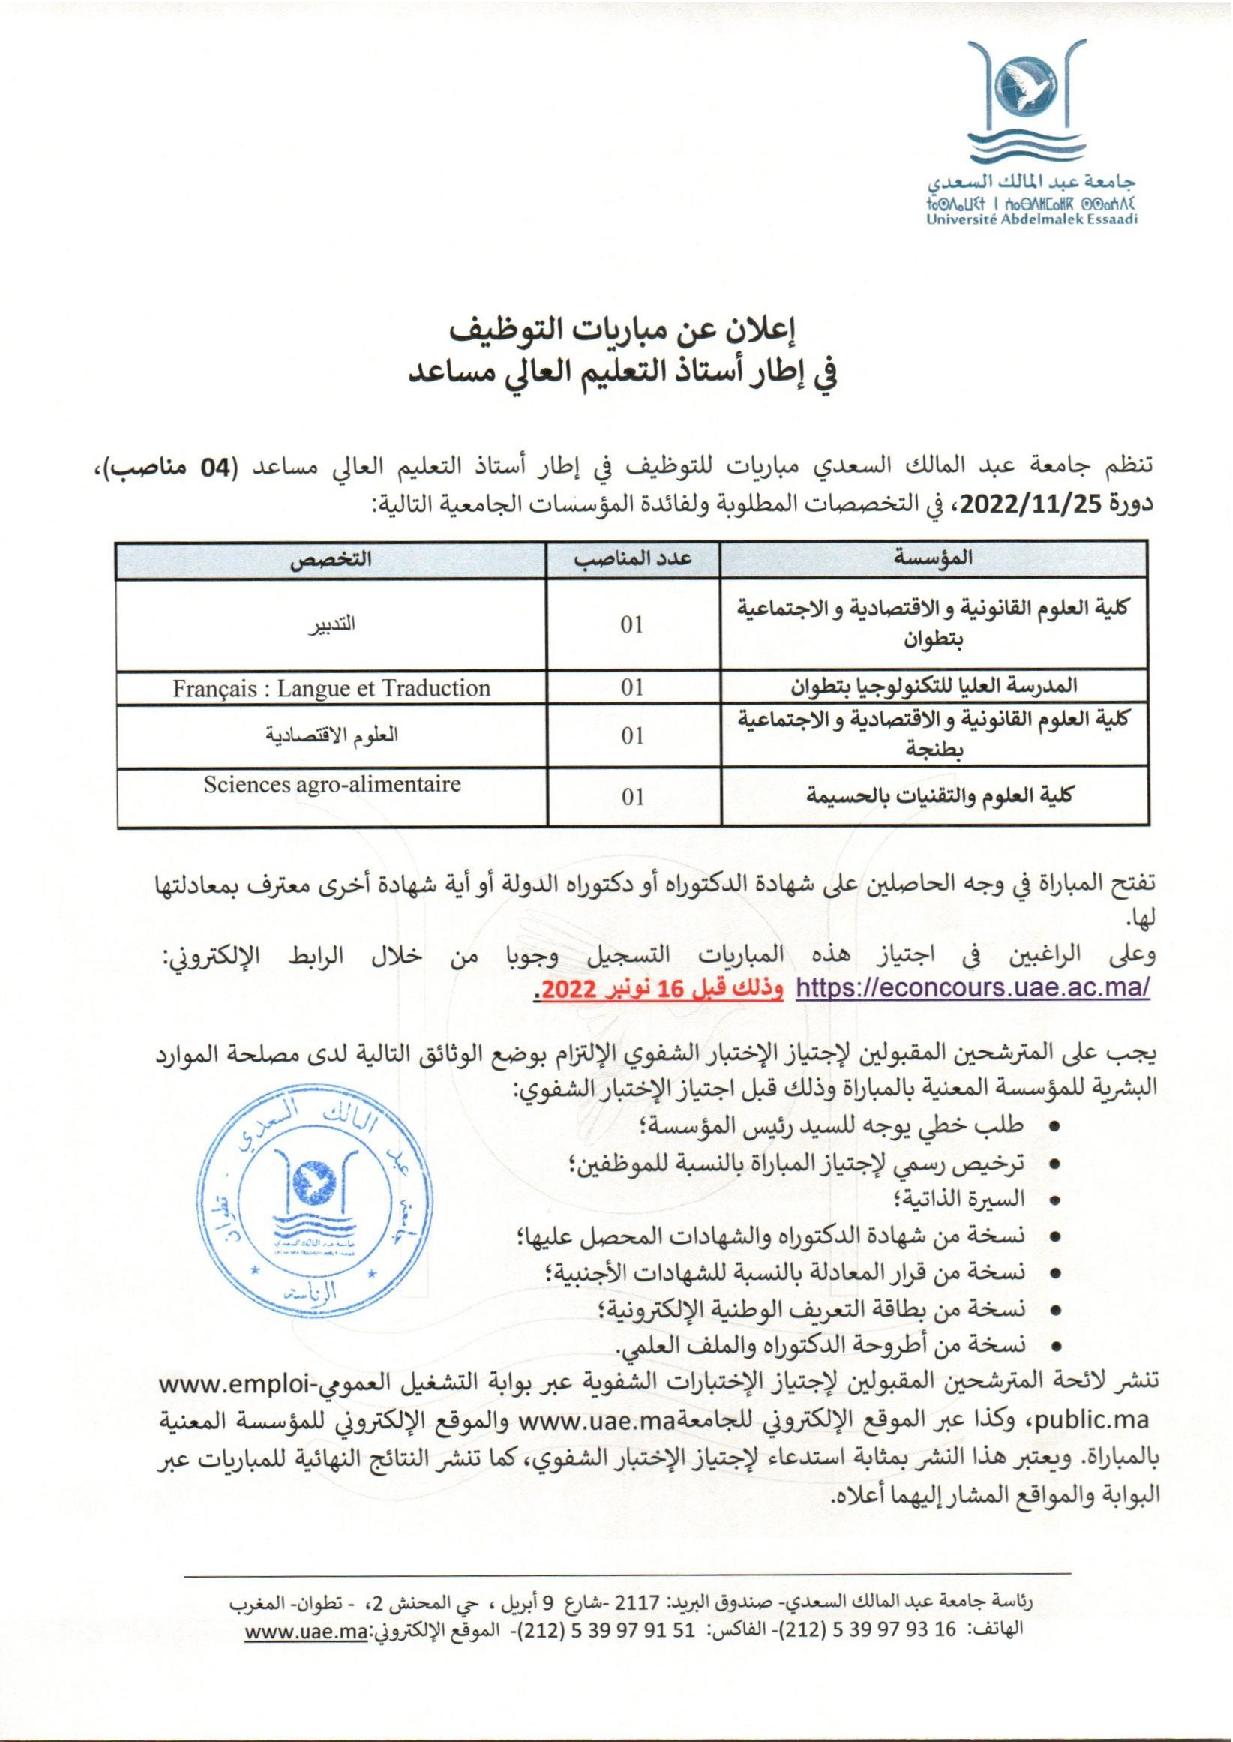 جامعة عبد المالك السعدي مباريات للتوظيف في إطار أستاذ التعليم العالي مساعد (04 مناصب) دورة 25/11/2022